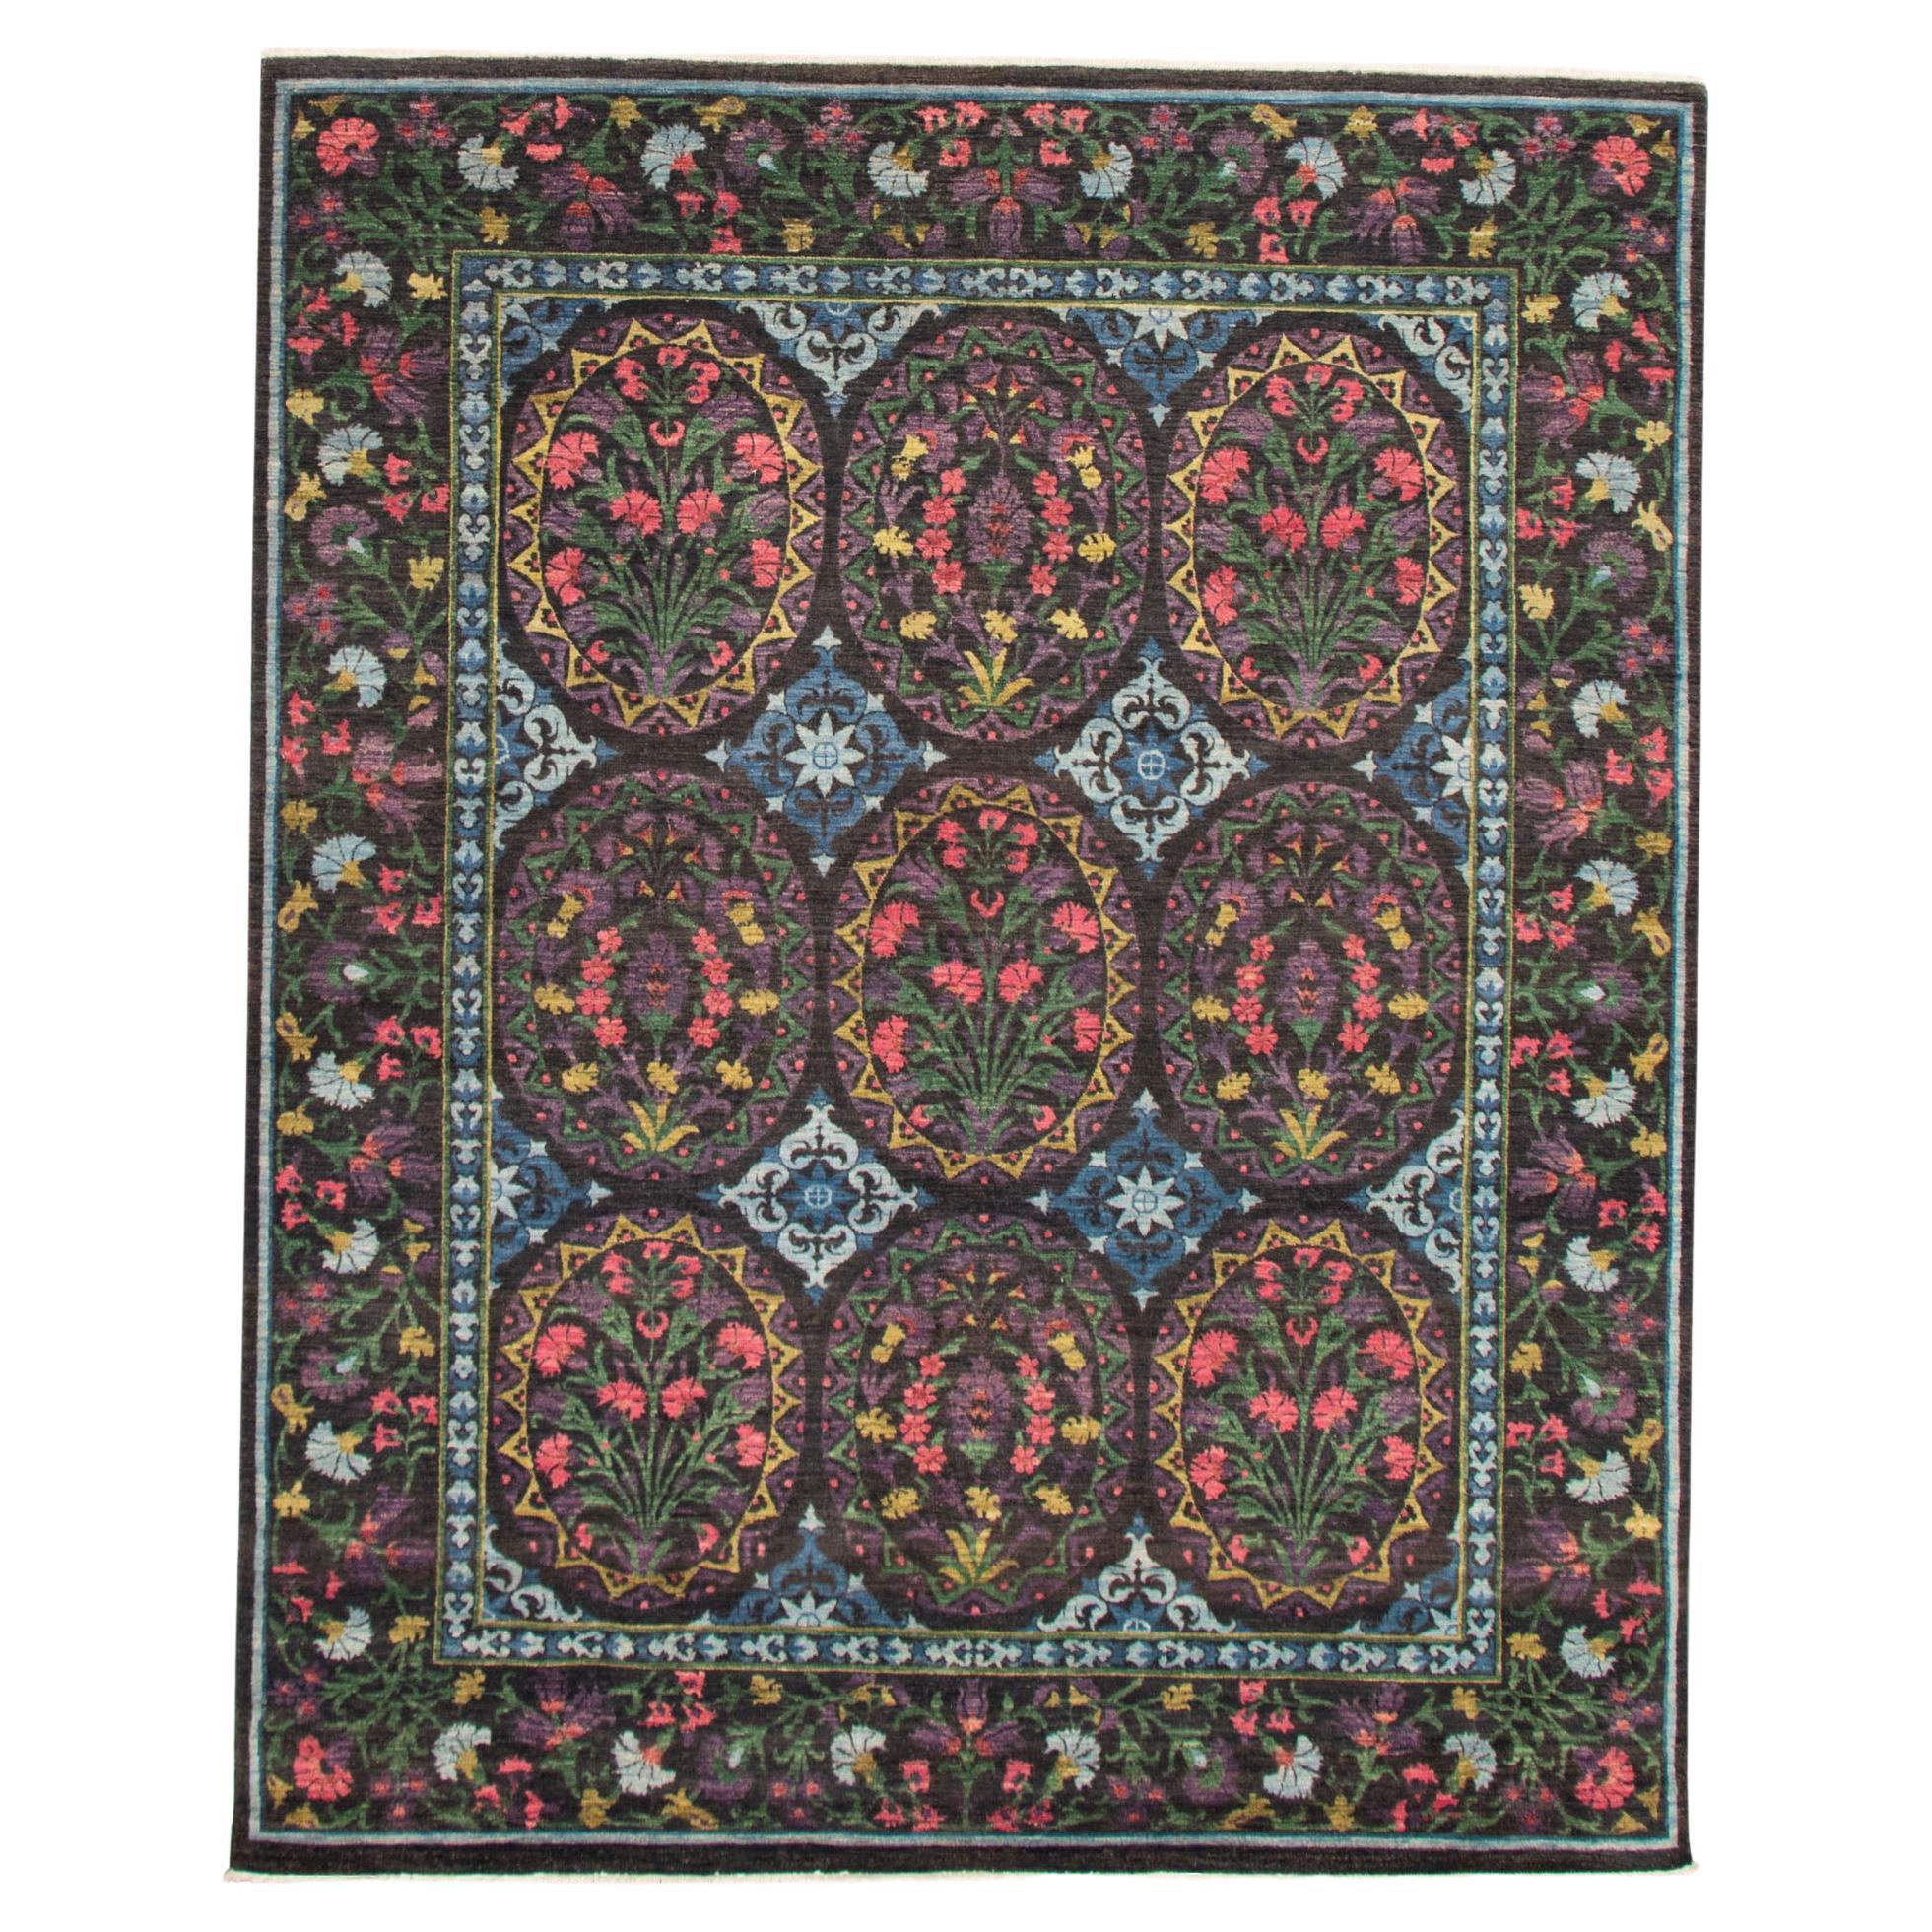 Tapis Lahore transitionnel en laine noué à la main avec design floral, 8' x 10'.